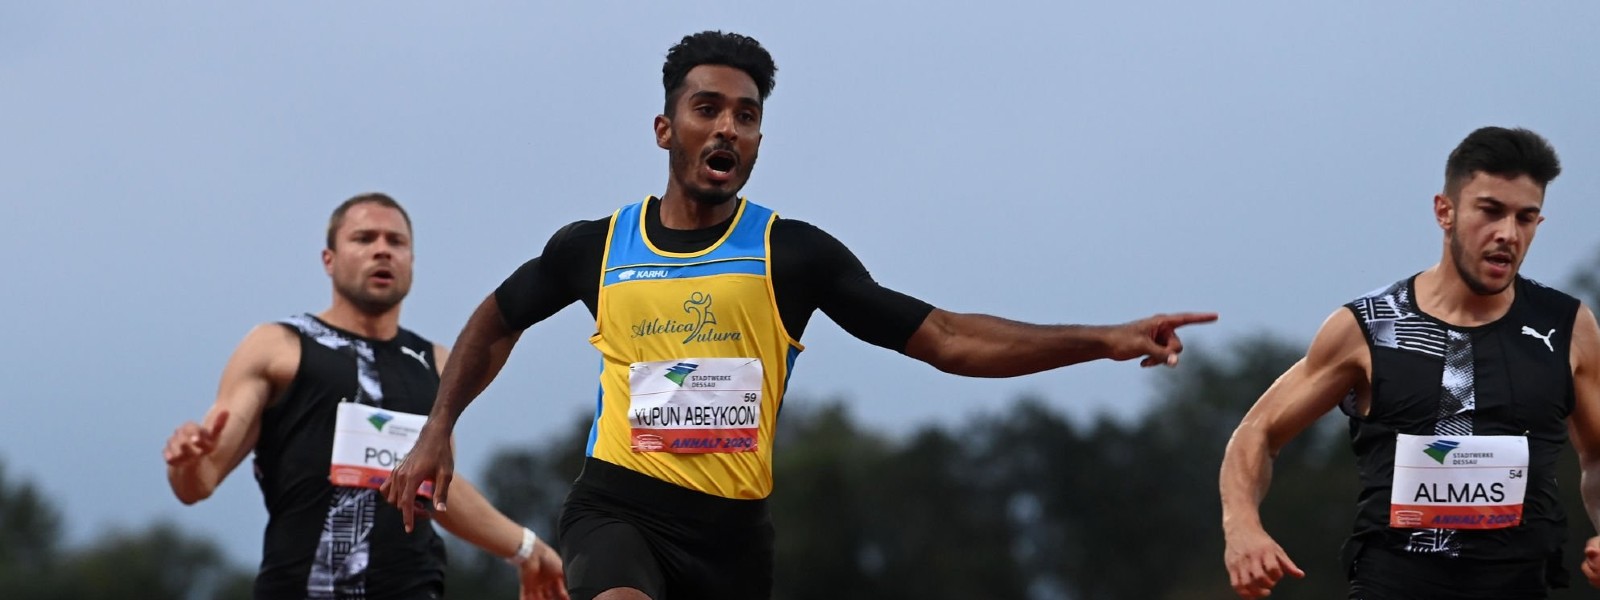 Sri Lanka’s Abeykoon breaks another sprint record